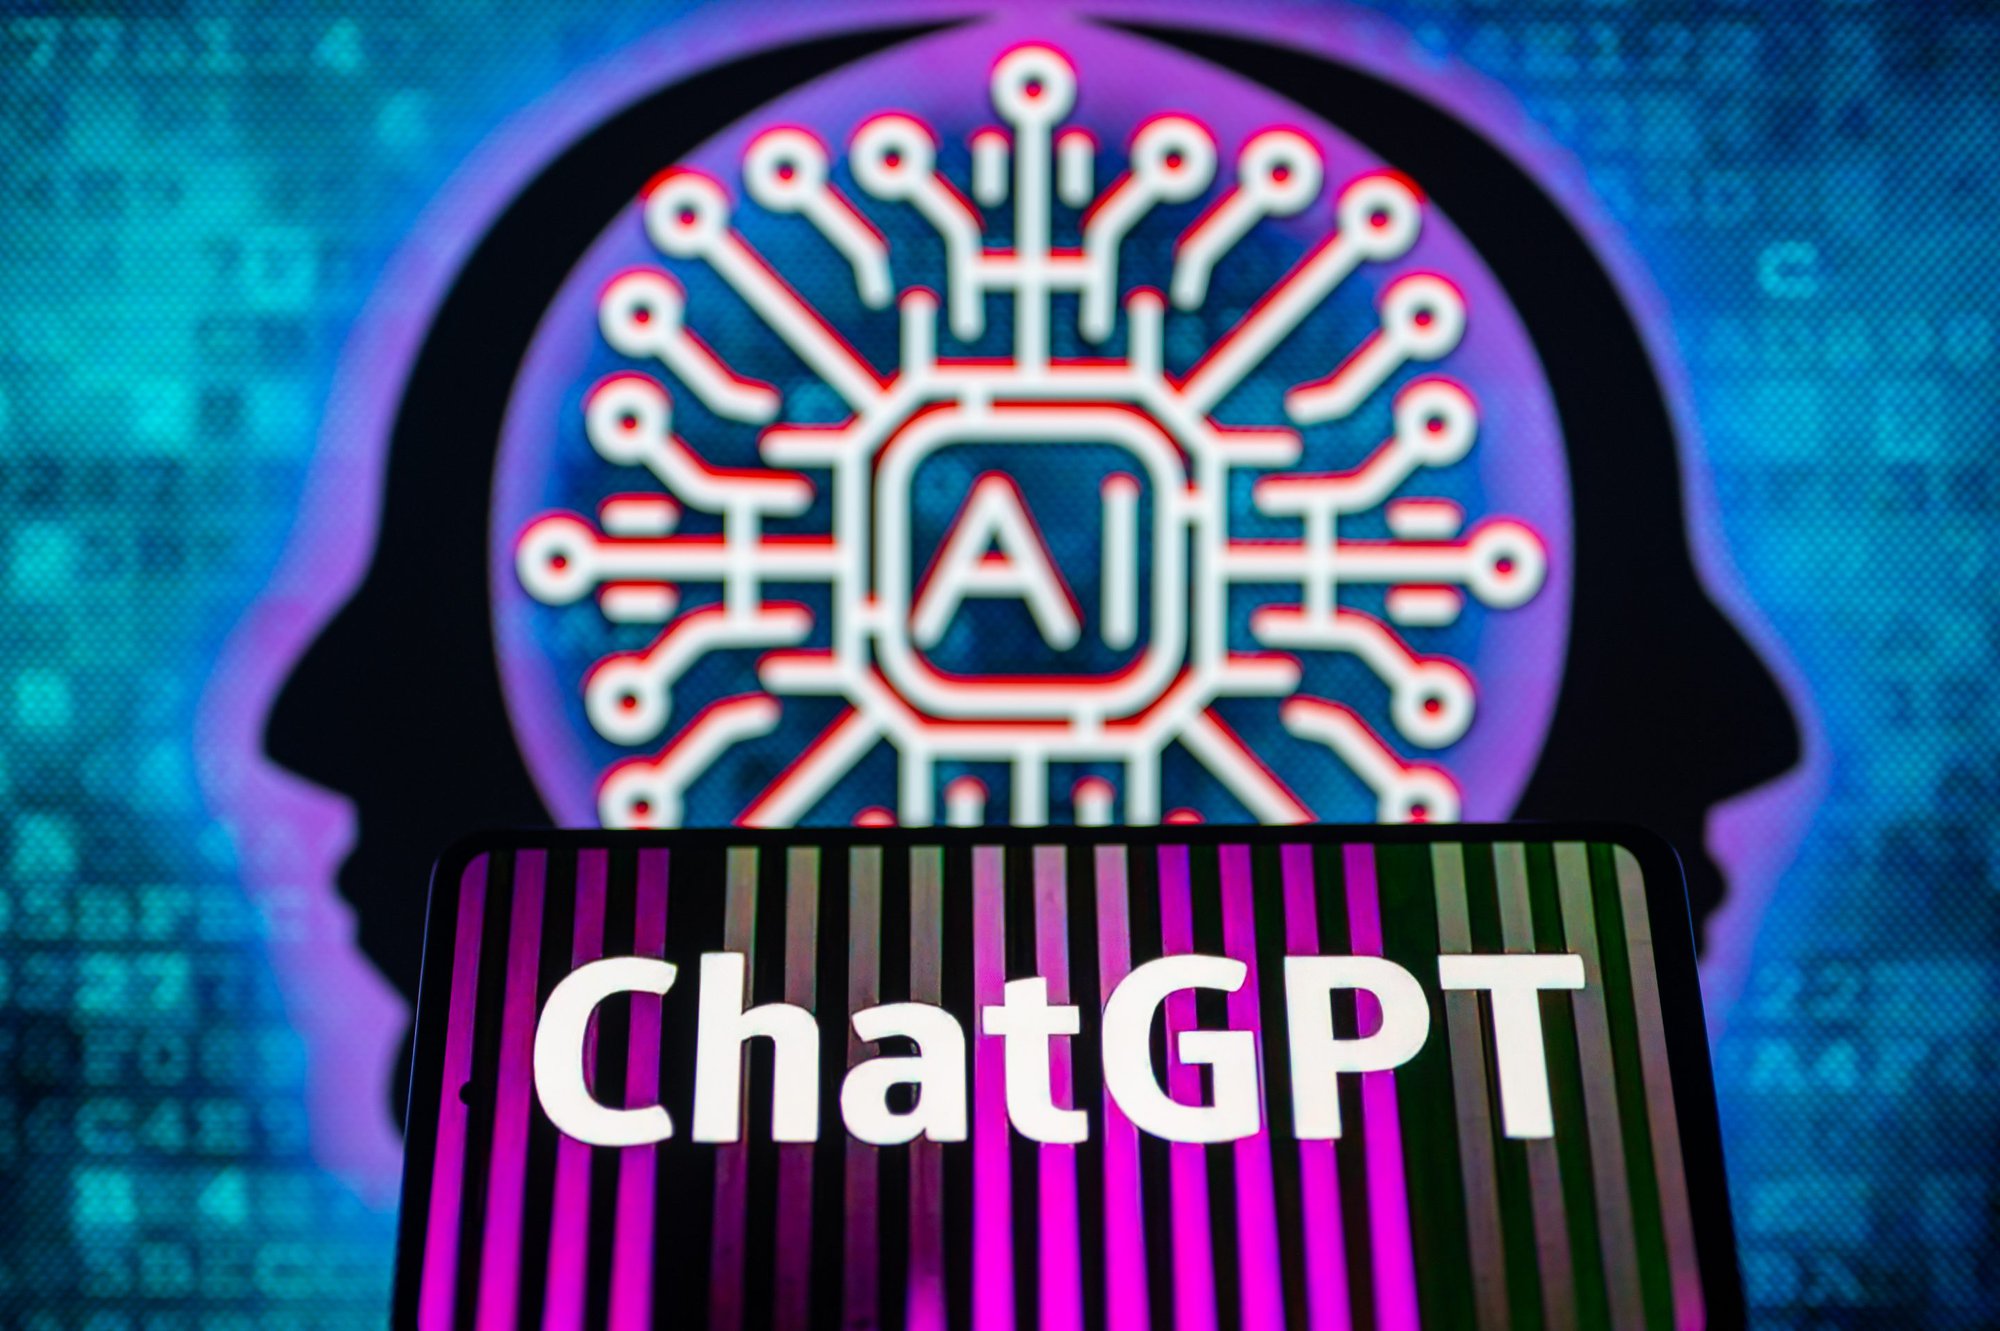 Hé lộ mức phí khổng lồ để ChatGPT trả lời trơn tru câu hỏi của người dùng - Ảnh 1.